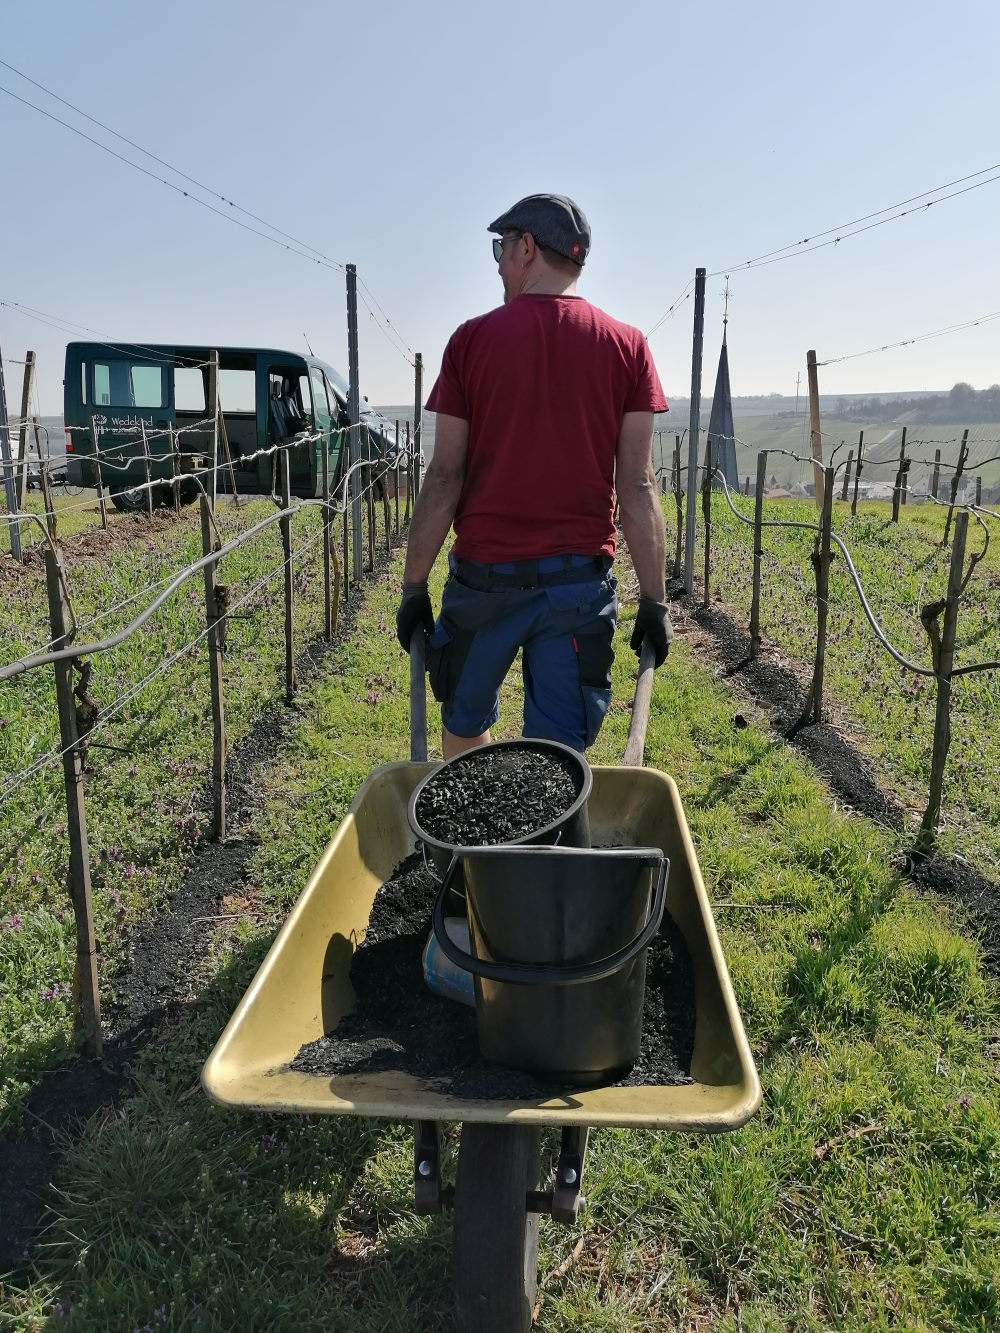 Weinbauer Philipp Wedekind zieht zwischen zwei Reihen von Weinstöcken einen Schubkarren mit zwei Eimern voll Planzenkohle hinter sich her